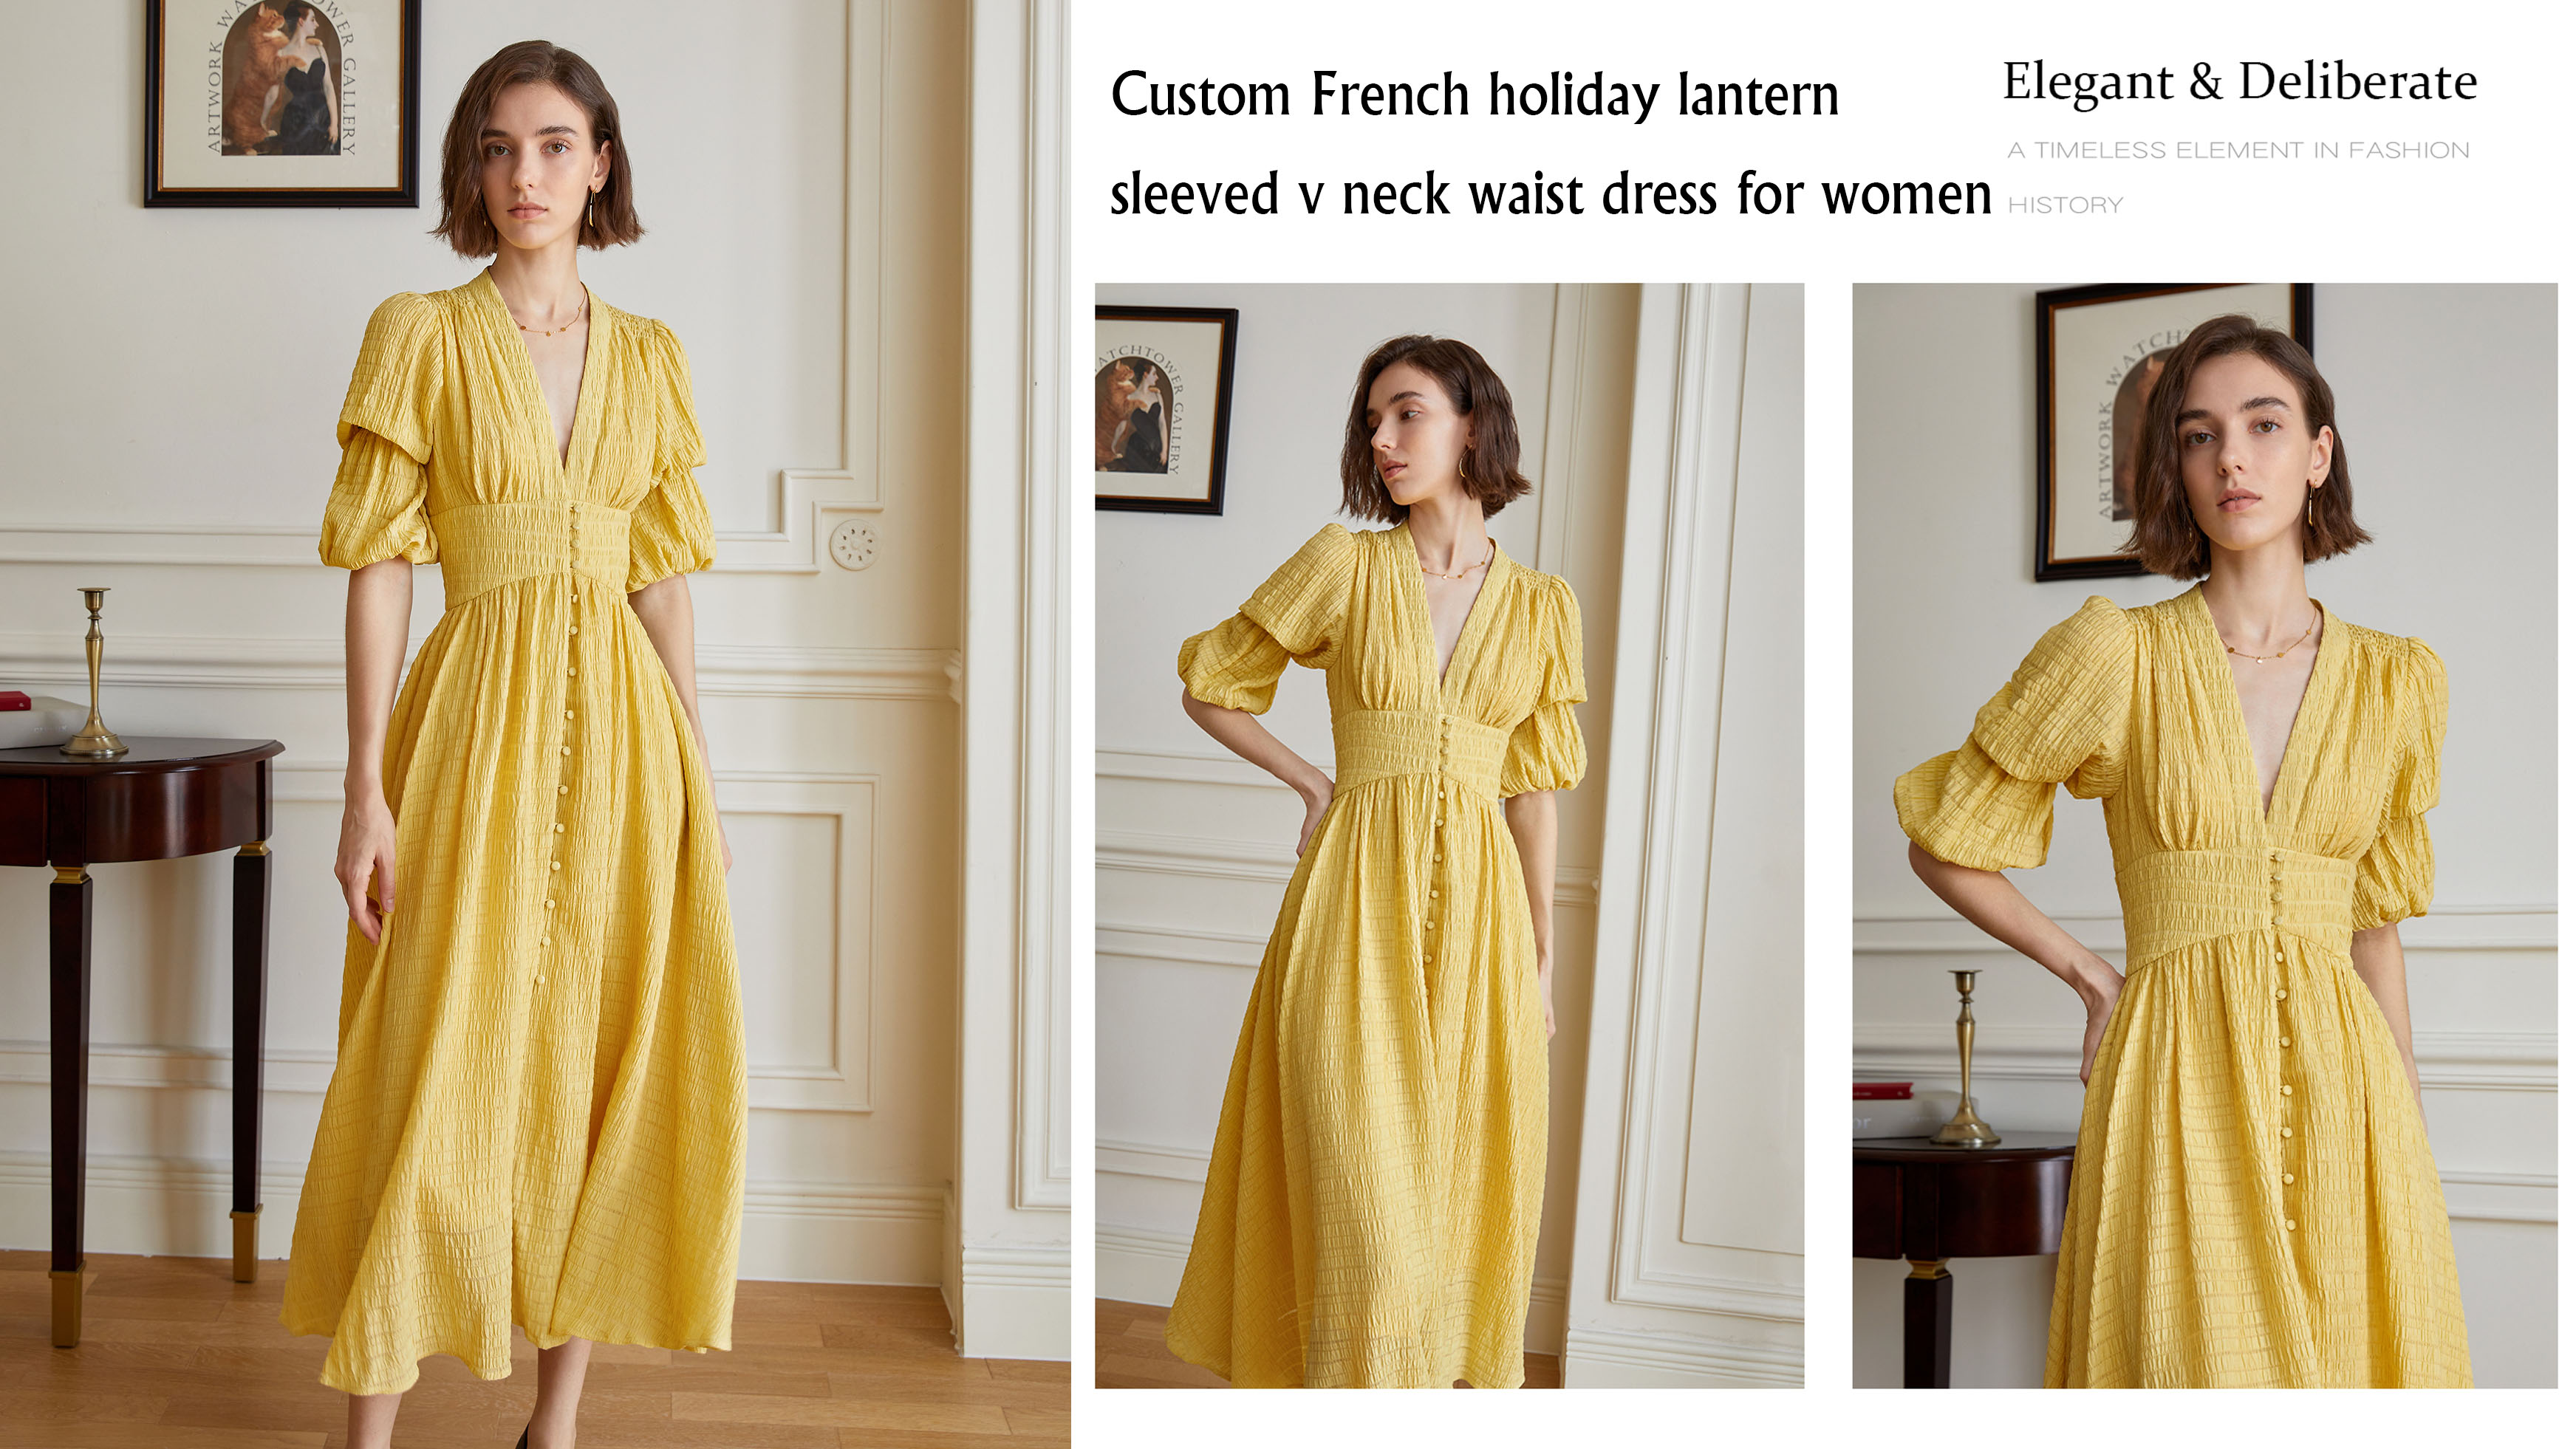 Պատվերով ֆրանսիական տոնական լապտեր թևերով վզով զգեստ կանանց համար